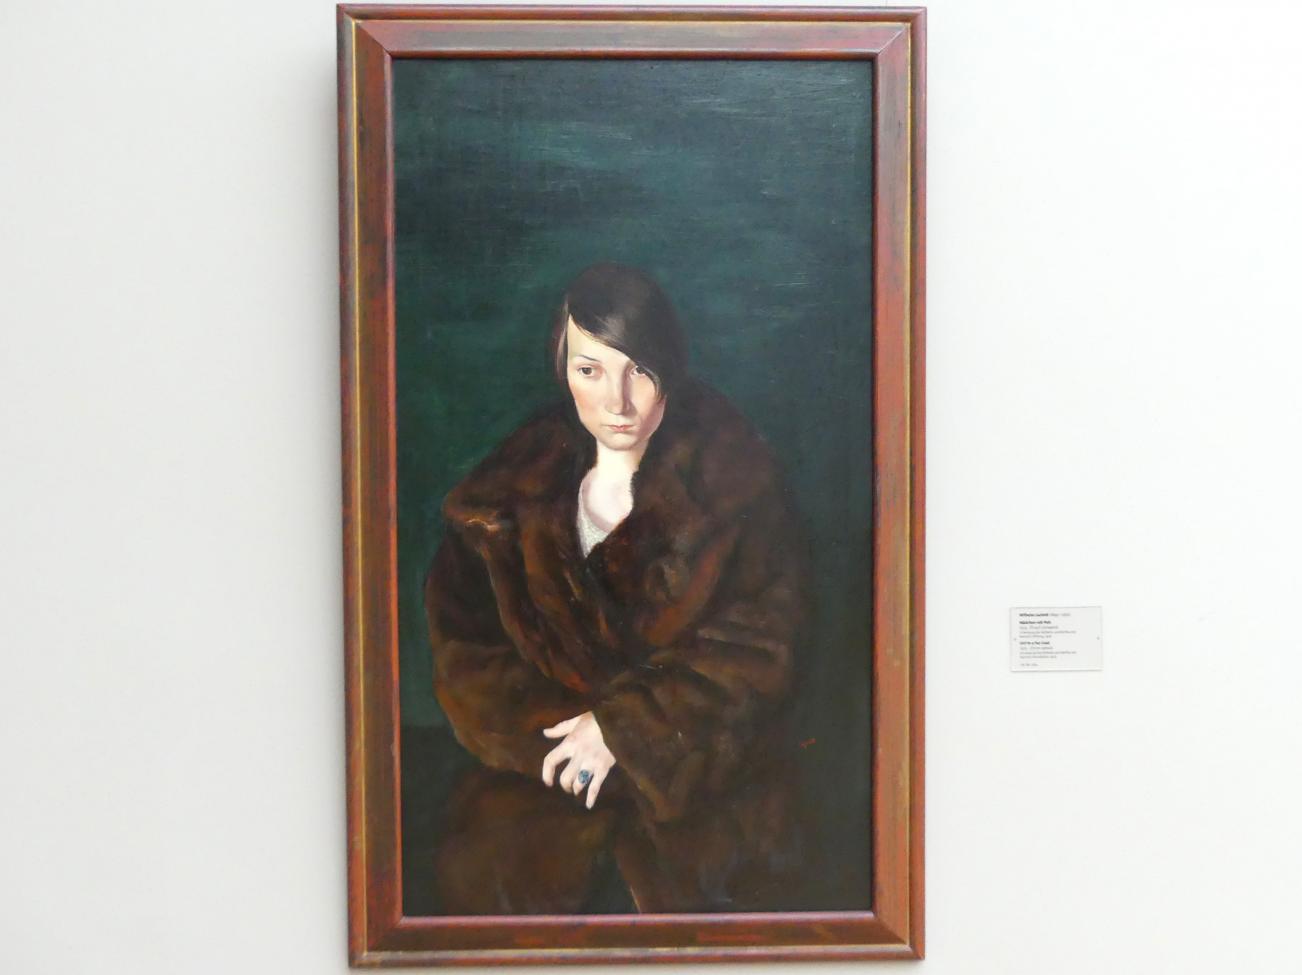 Wilhelm Lachnit (1922–1945), Mädchen mit Pelz, Dresden, Albertinum, Galerie Neue Meister, 2. Obergeschoss, Saal 15, 1925